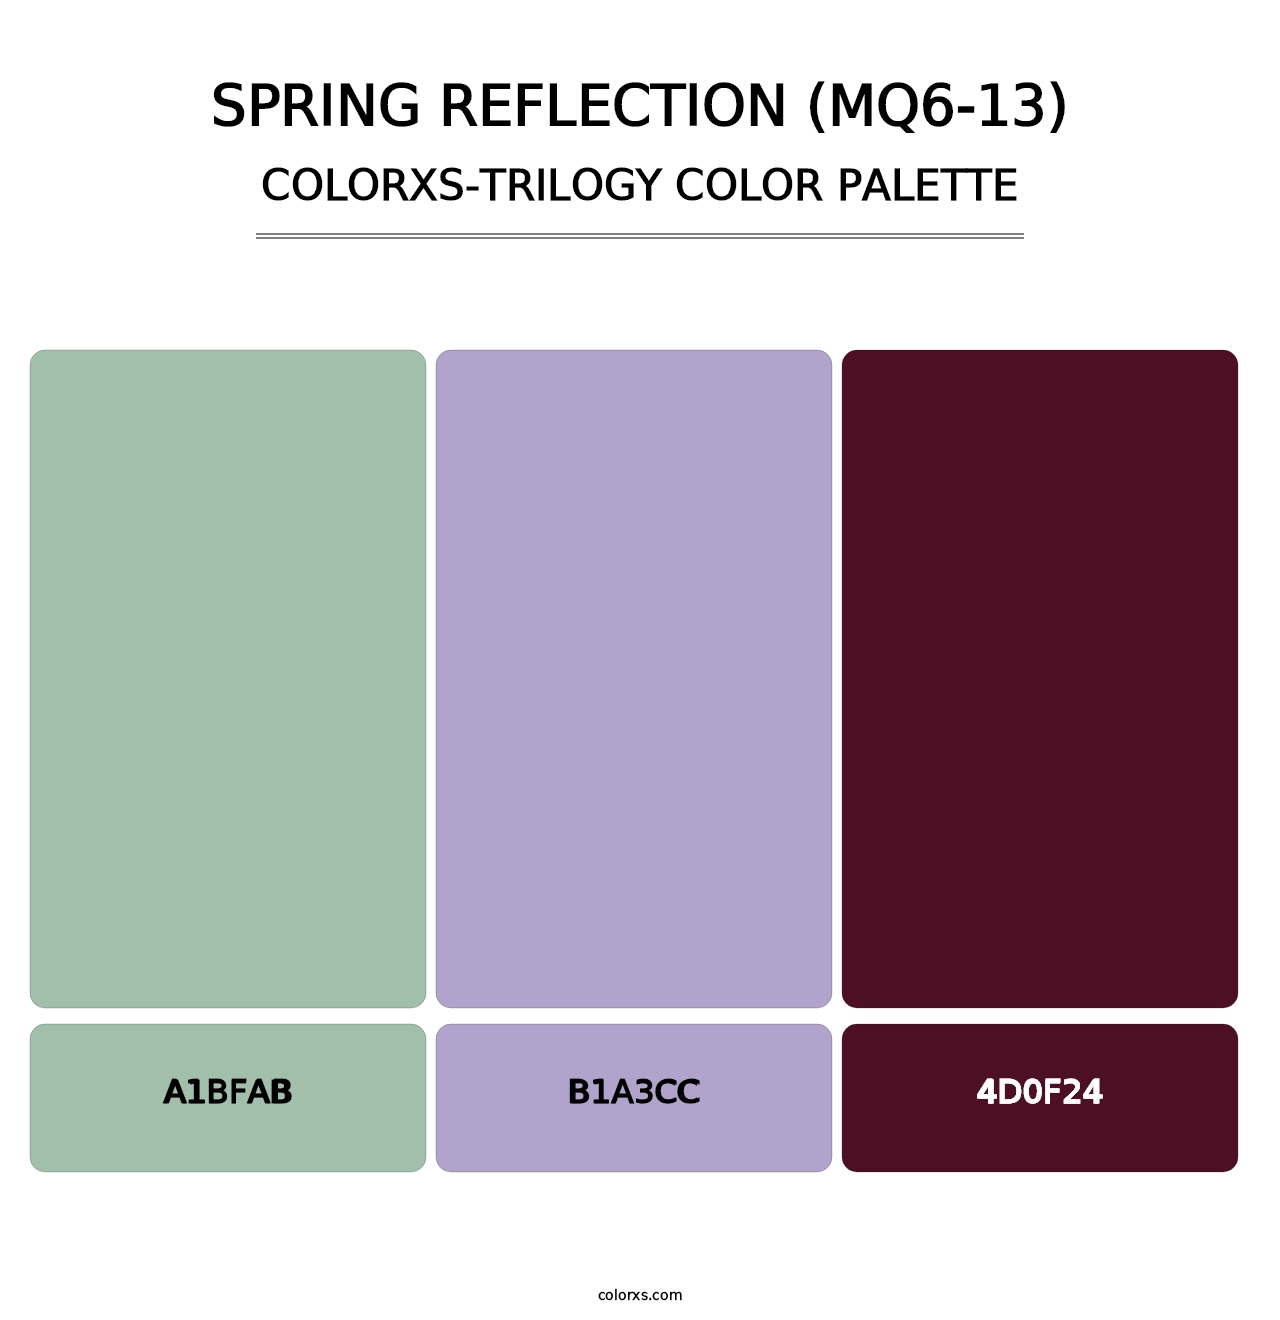 Spring Reflection (MQ6-13) - Colorxs Trilogy Palette